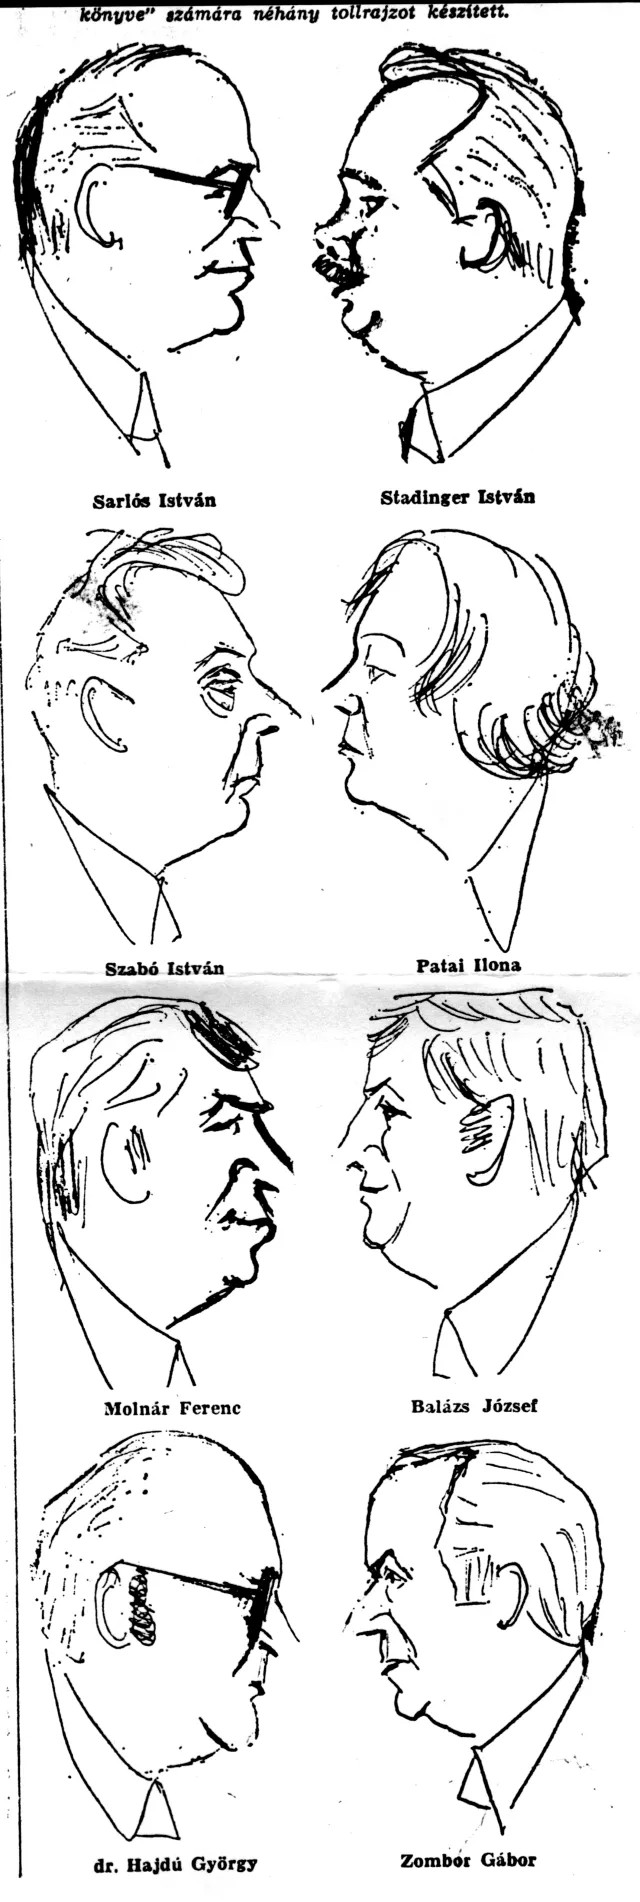 Gömöri Géza karikatúrái a volt munkatársairól